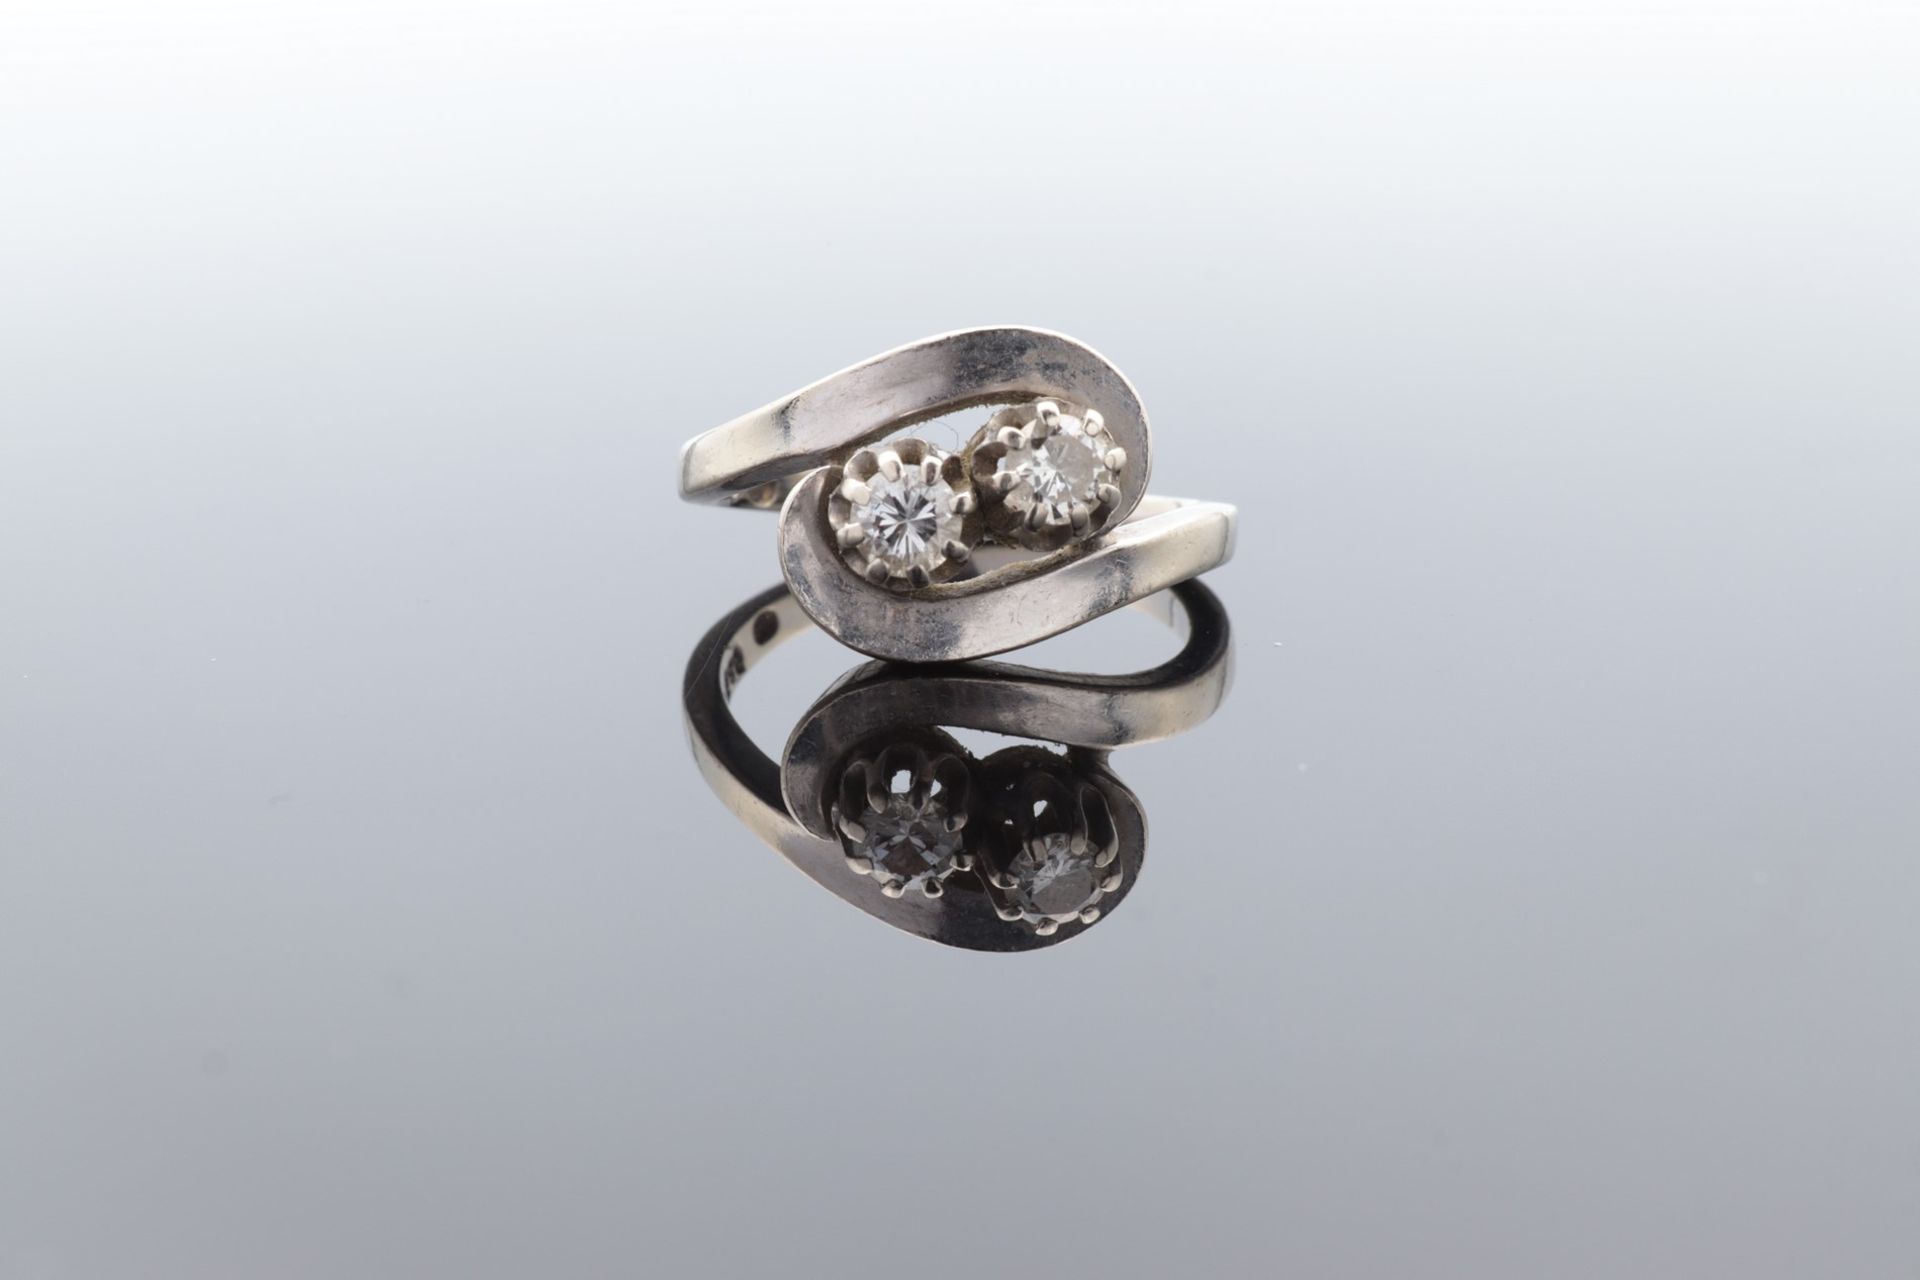 Diamant - Damenring WG 585, geschwungener Ringkopf besetzt mit 2 krappengefassten Diam - Image 2 of 5